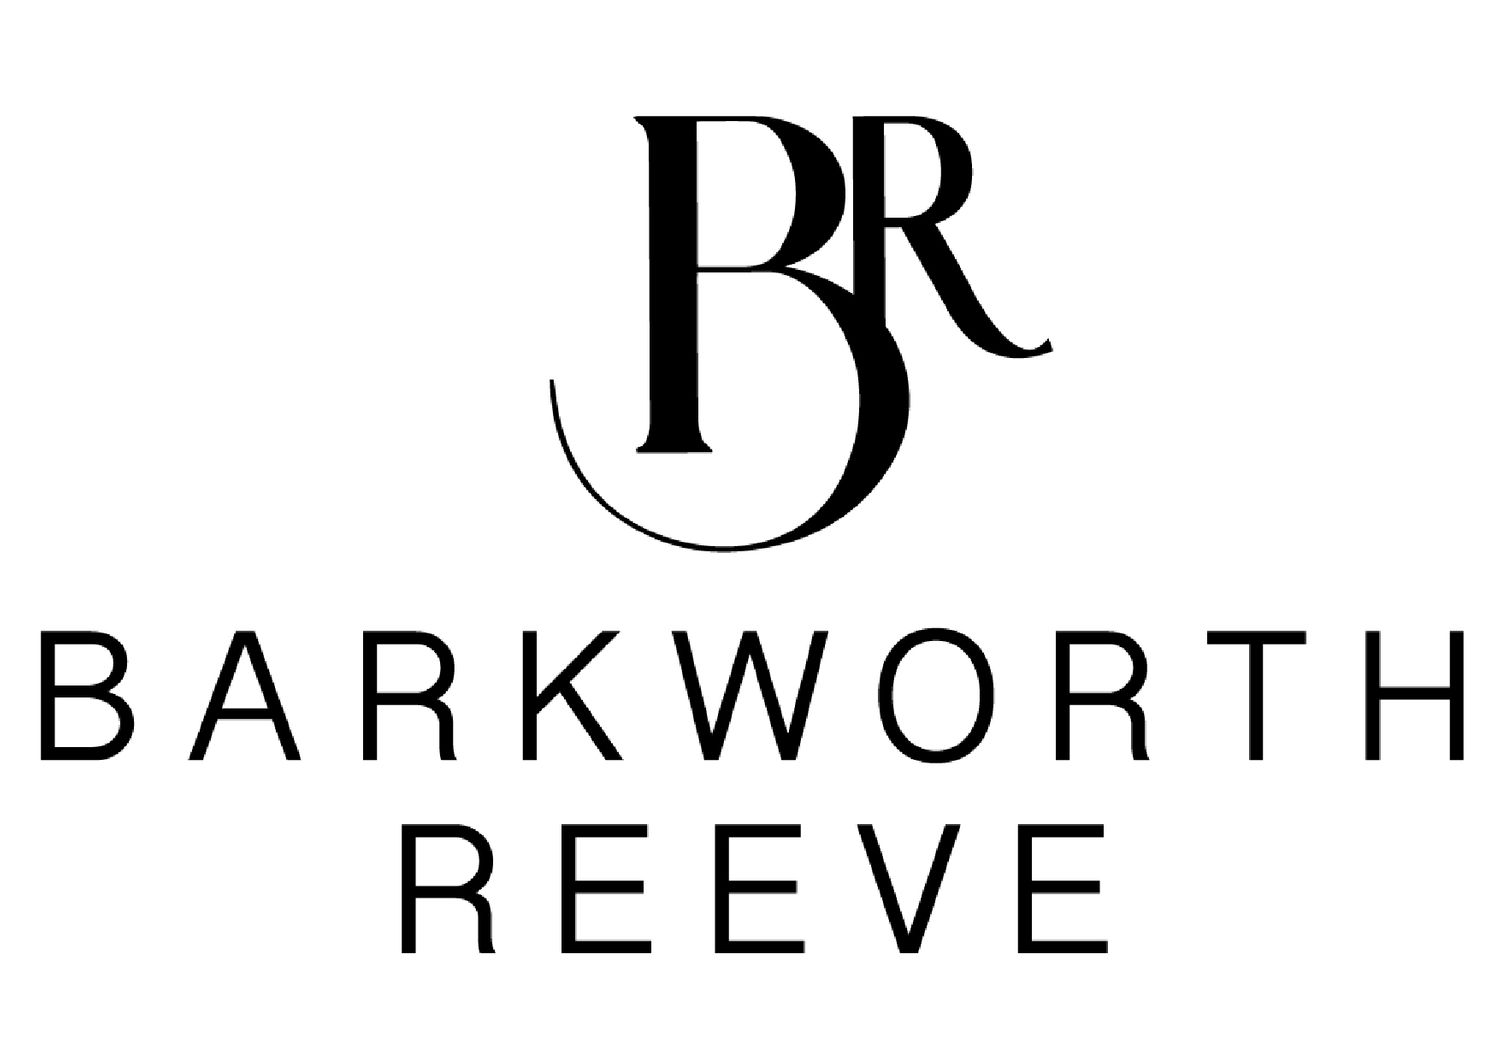 Barkworth Reeve